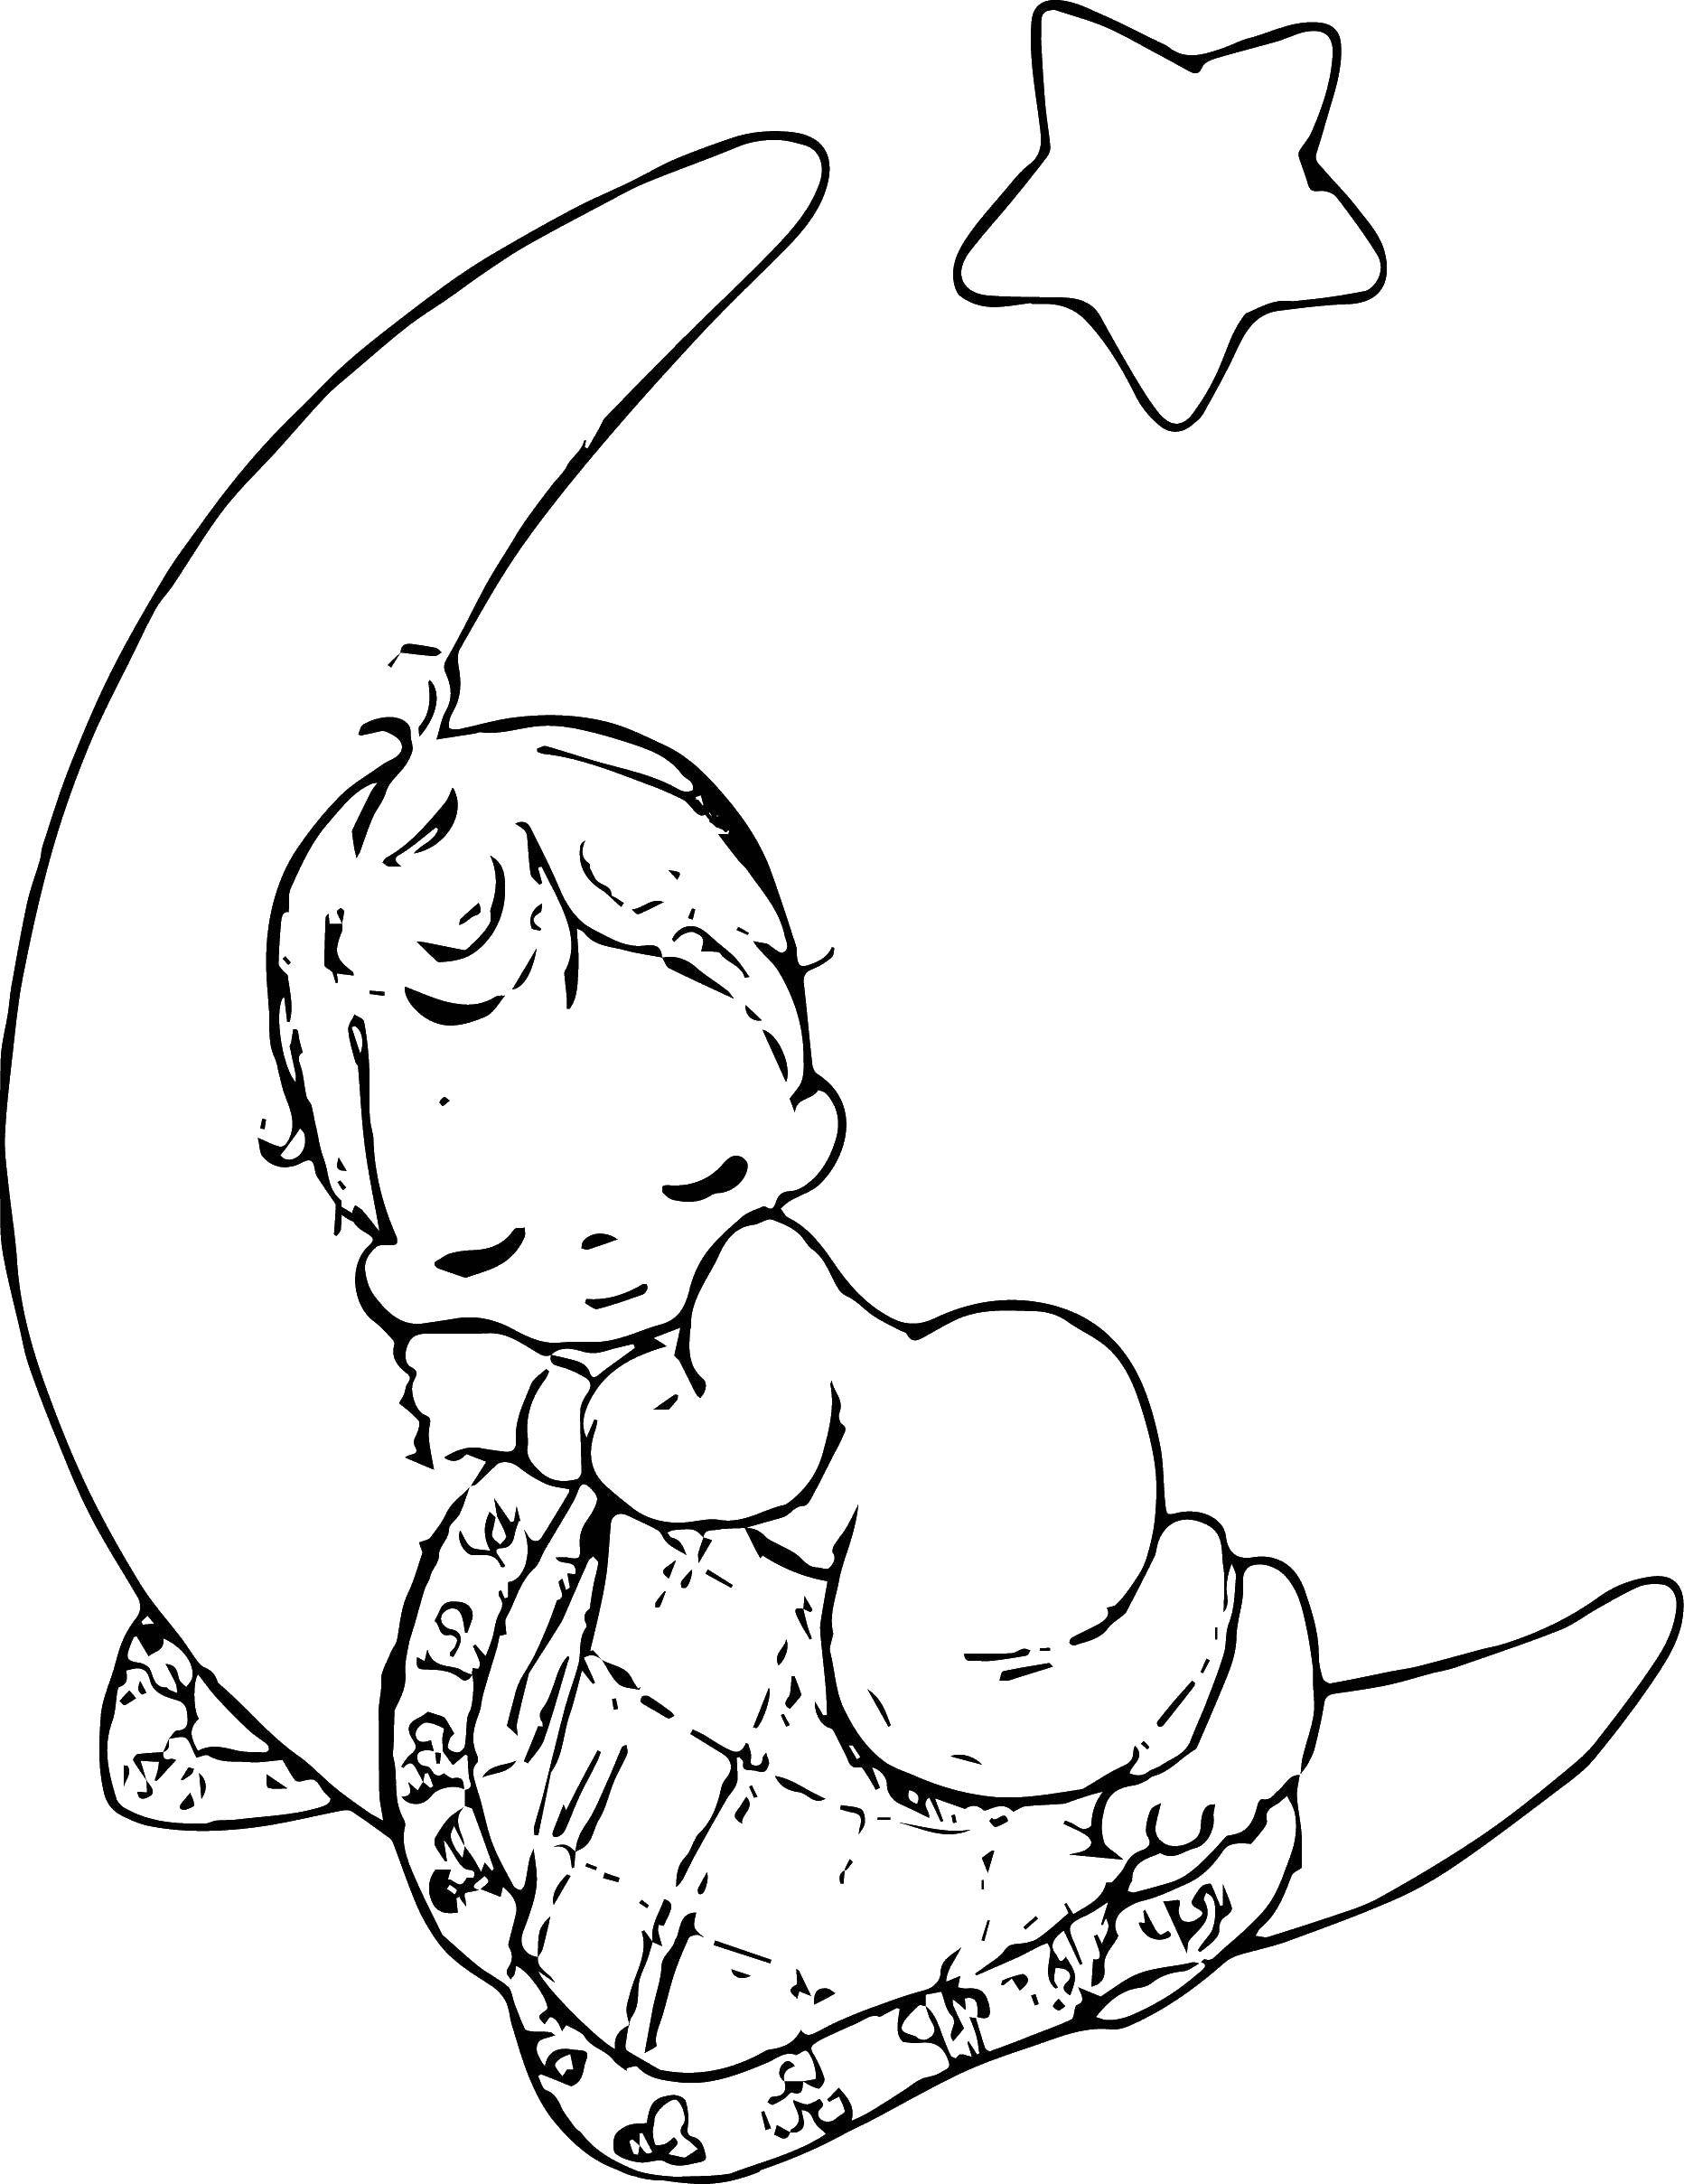 Опис: розмальовки  Дитина на місяці. Категорія: Сон. Теги:  дитина, місяць, зірка.